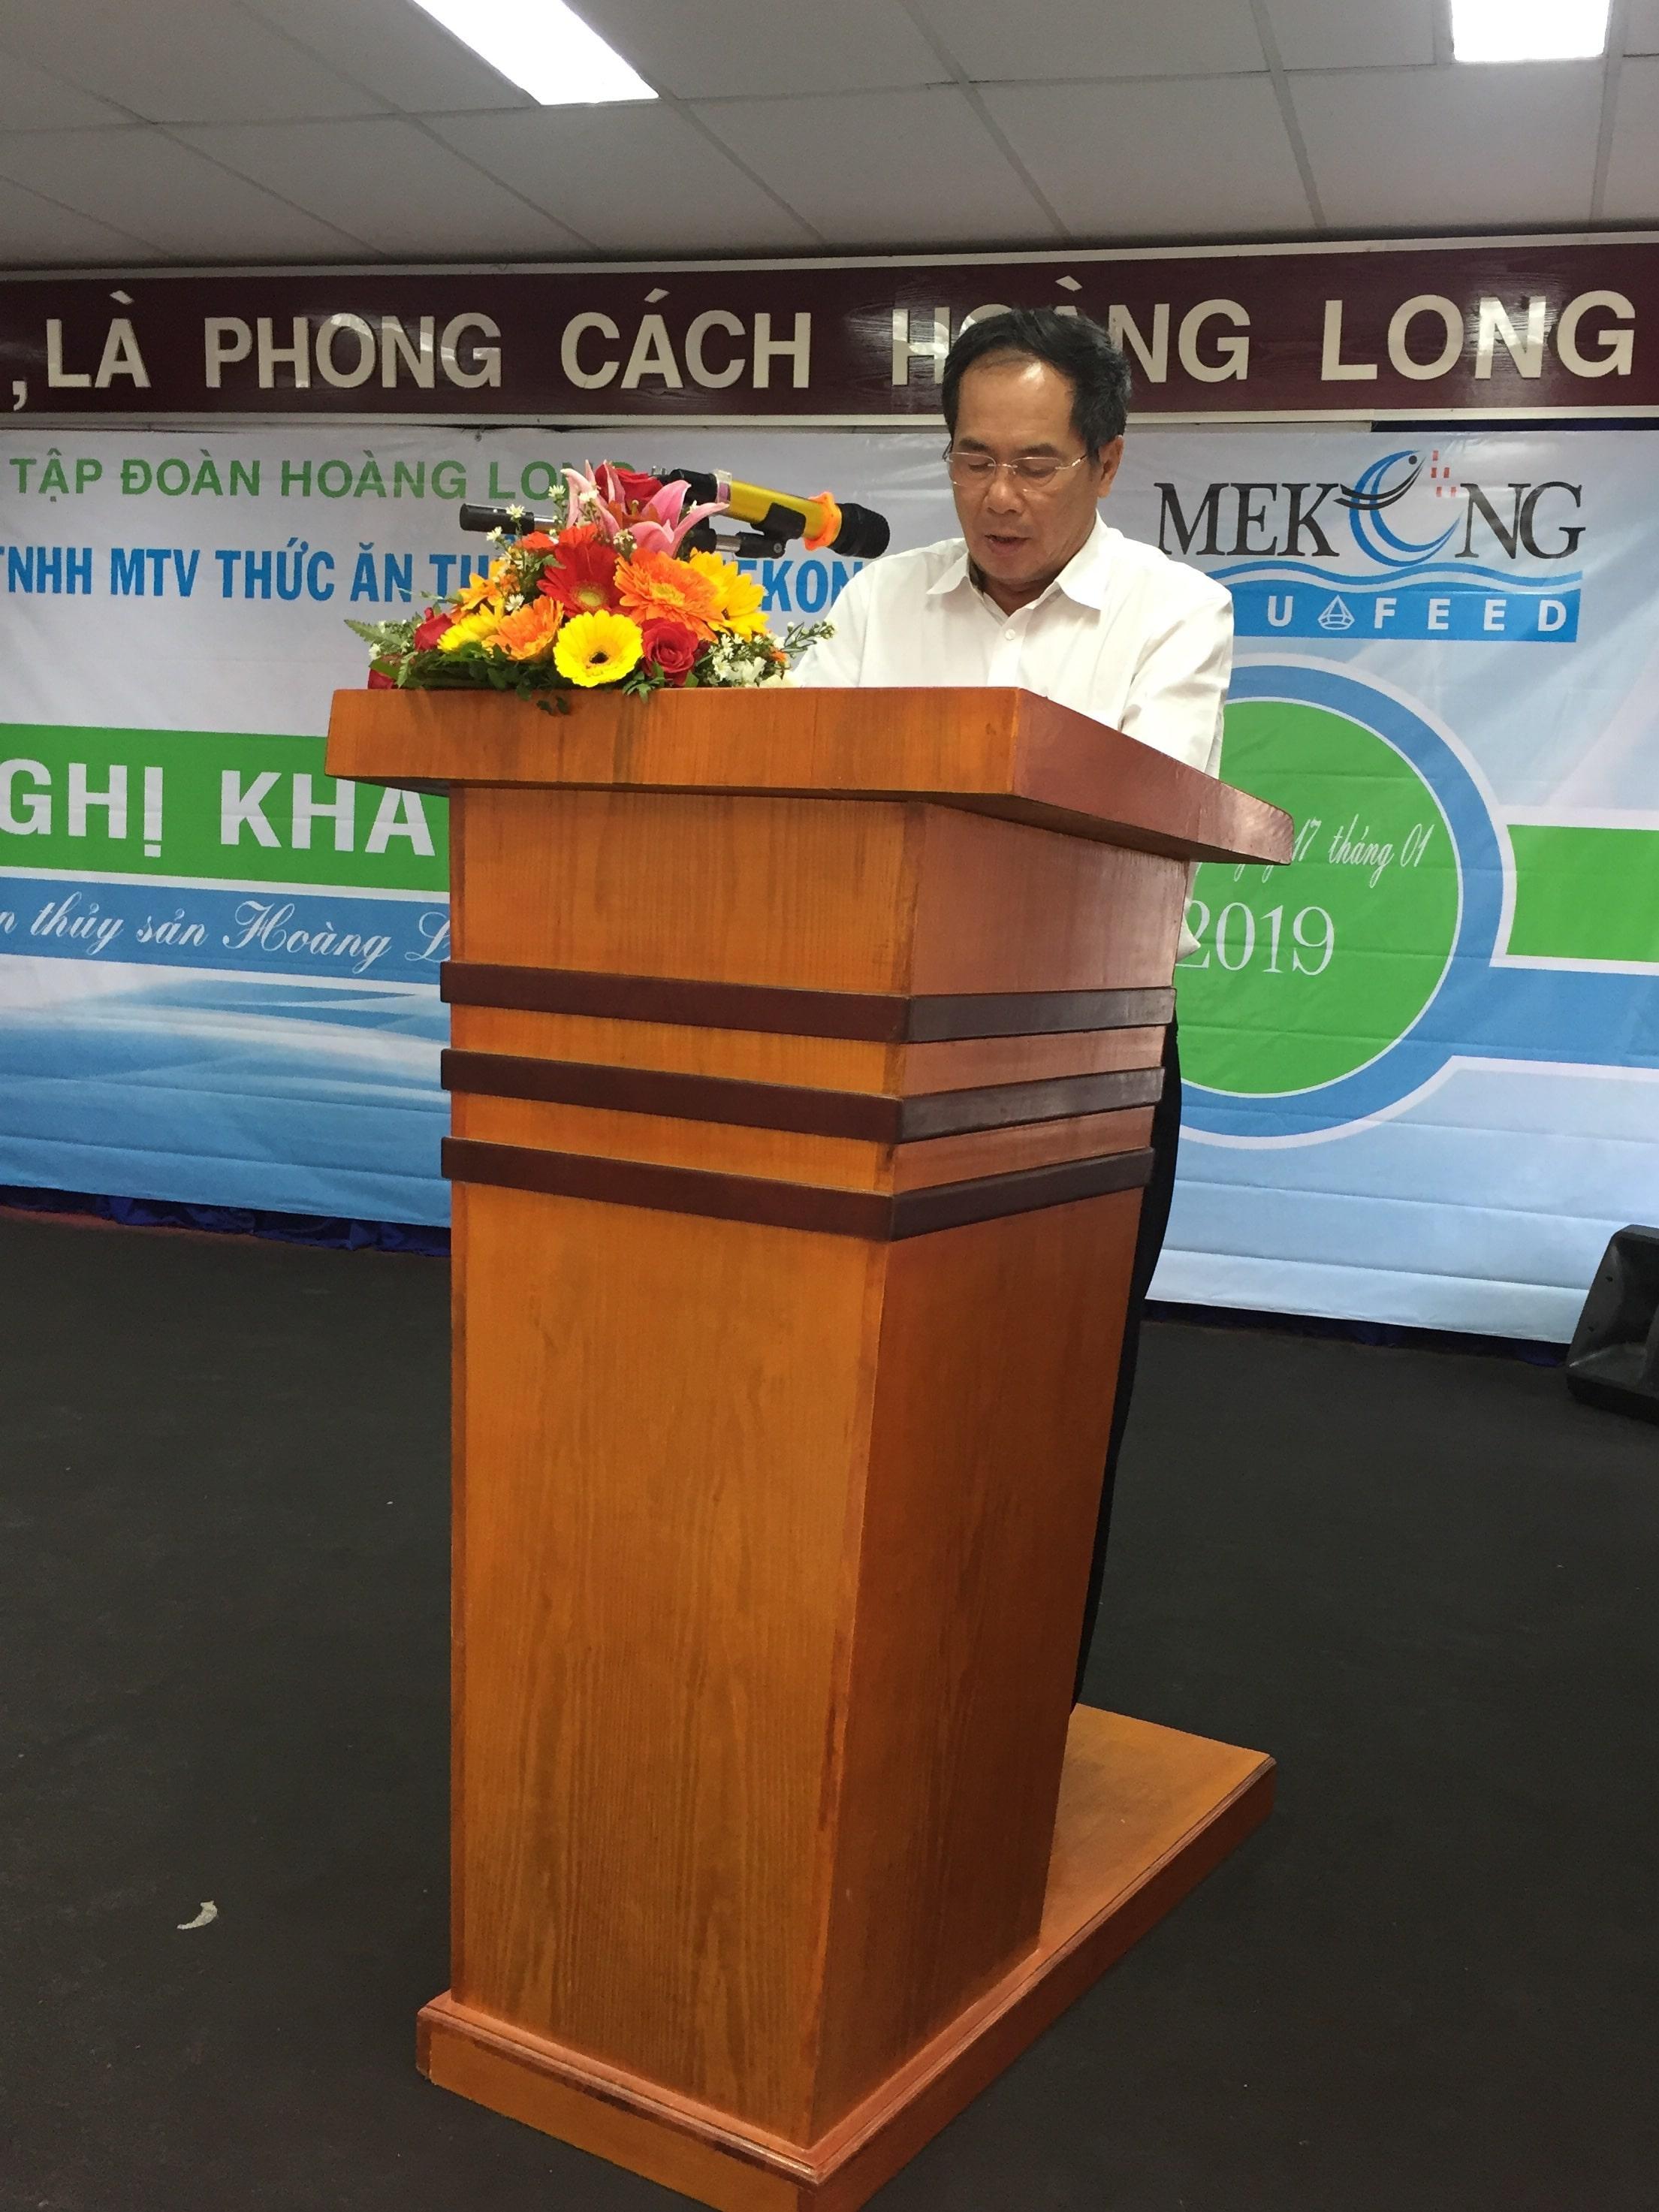 Công ty TNHH MTV chế biến thức ăn Thủy sản MeKong – Hoàng Long tổ chức hội nghị khách hàng